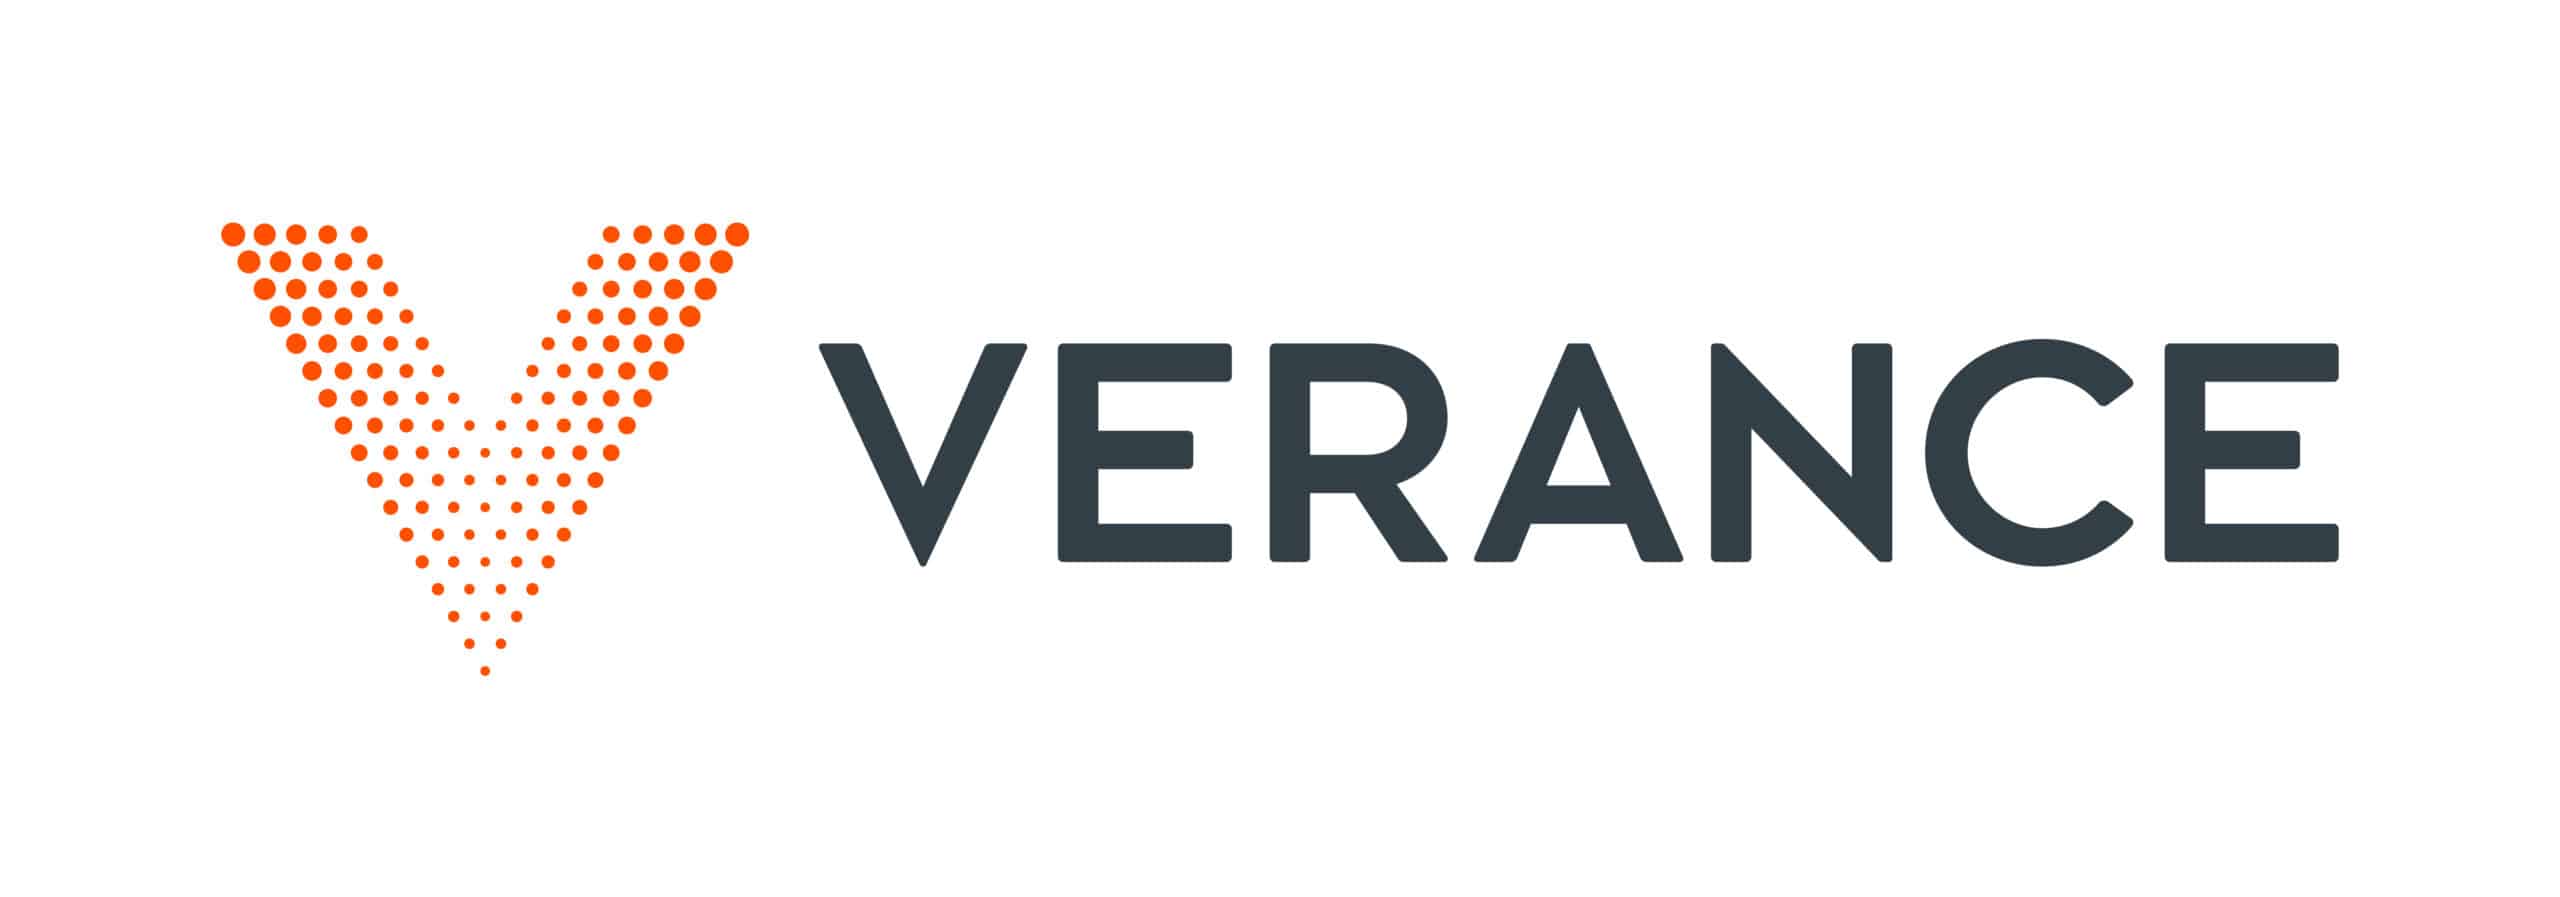 Verance Watermark Deployments Power NEXTGEN TV Interactivity Nationwide